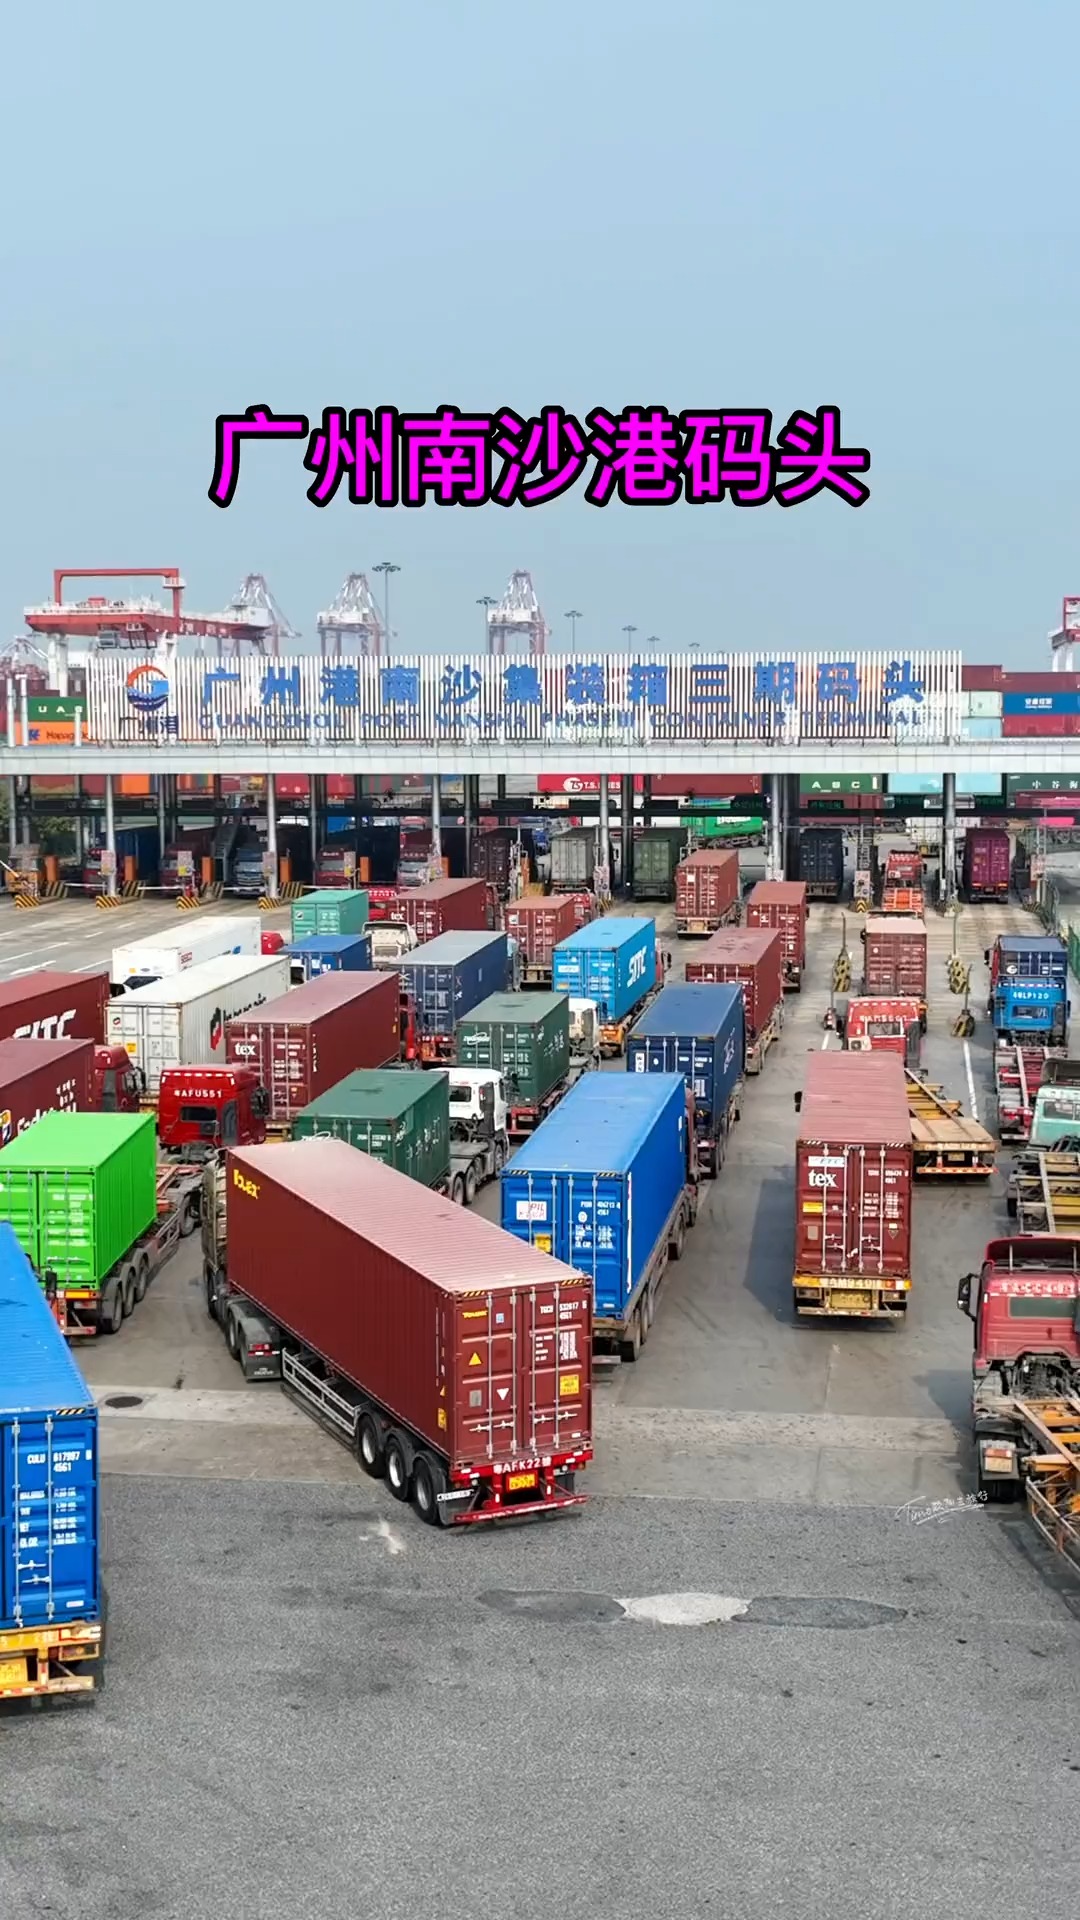 广州南沙港集装箱全貌，中国华南地区最大规模的综合性港口，什么叫做实力，这就是实力！为我们的祖国繁荣昌盛 点赞！